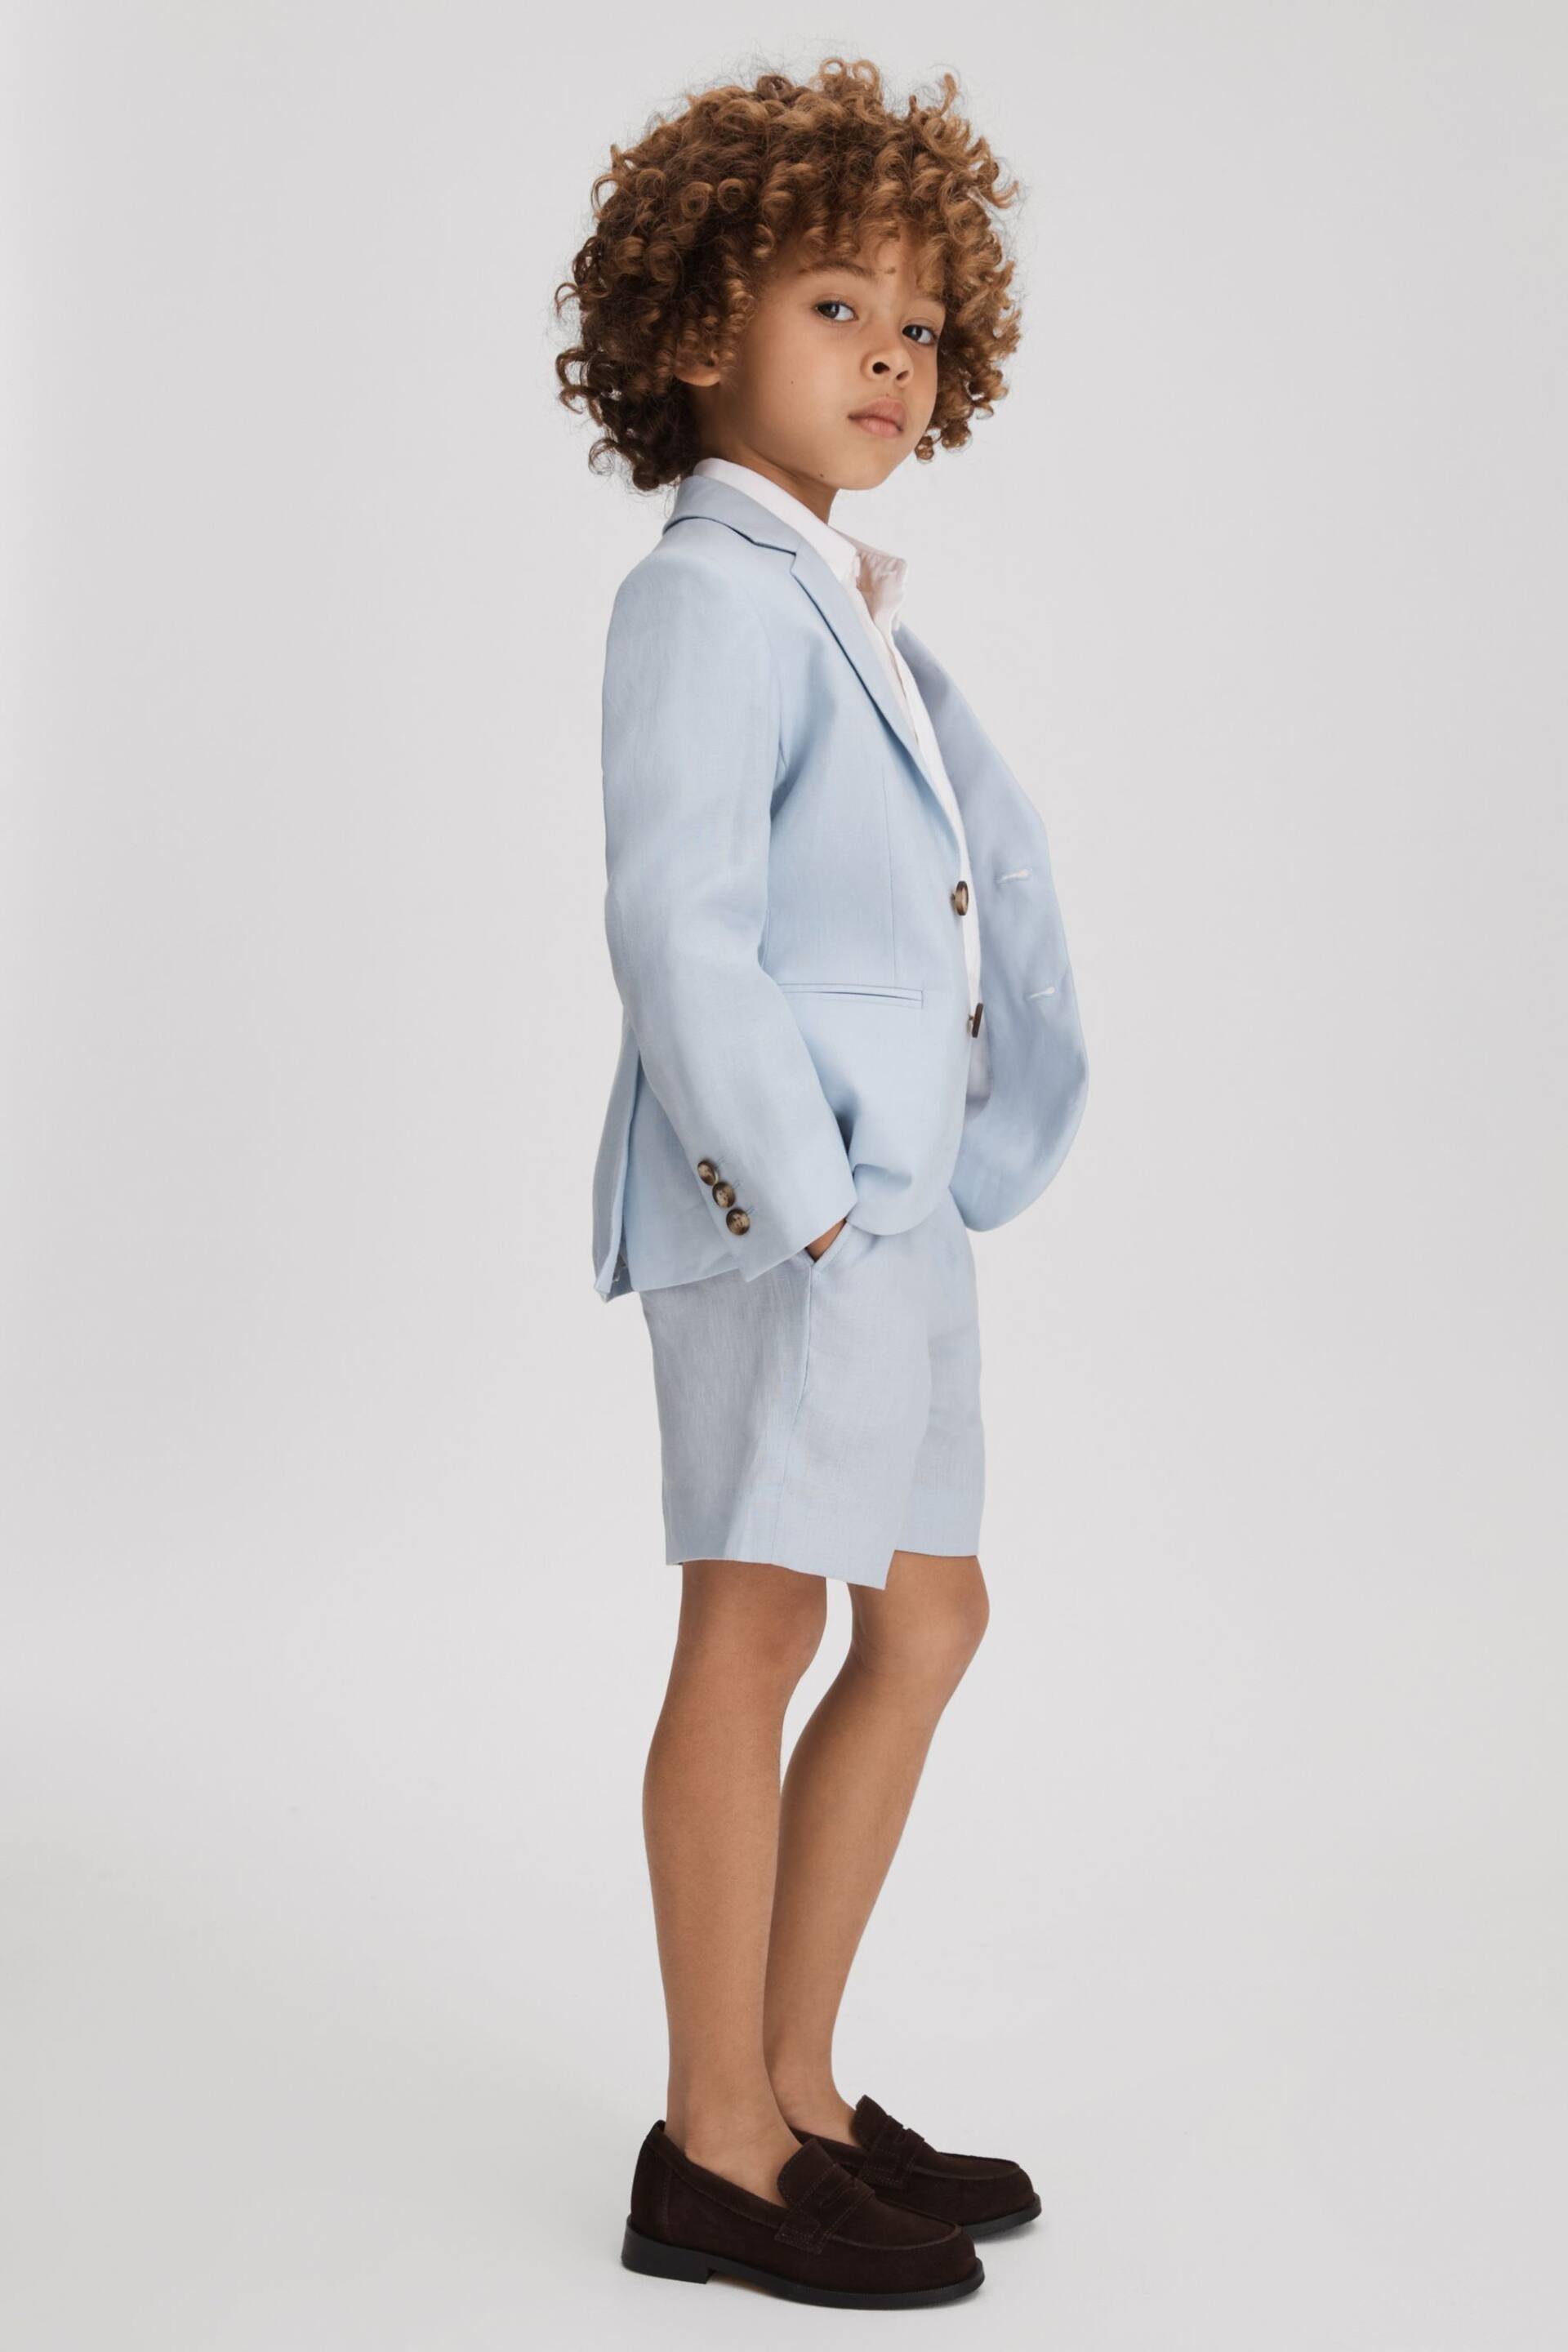 Reiss Soft Blue Kin Senior Slim Fit Linen Adjustable Shorts - Image 1 of 4